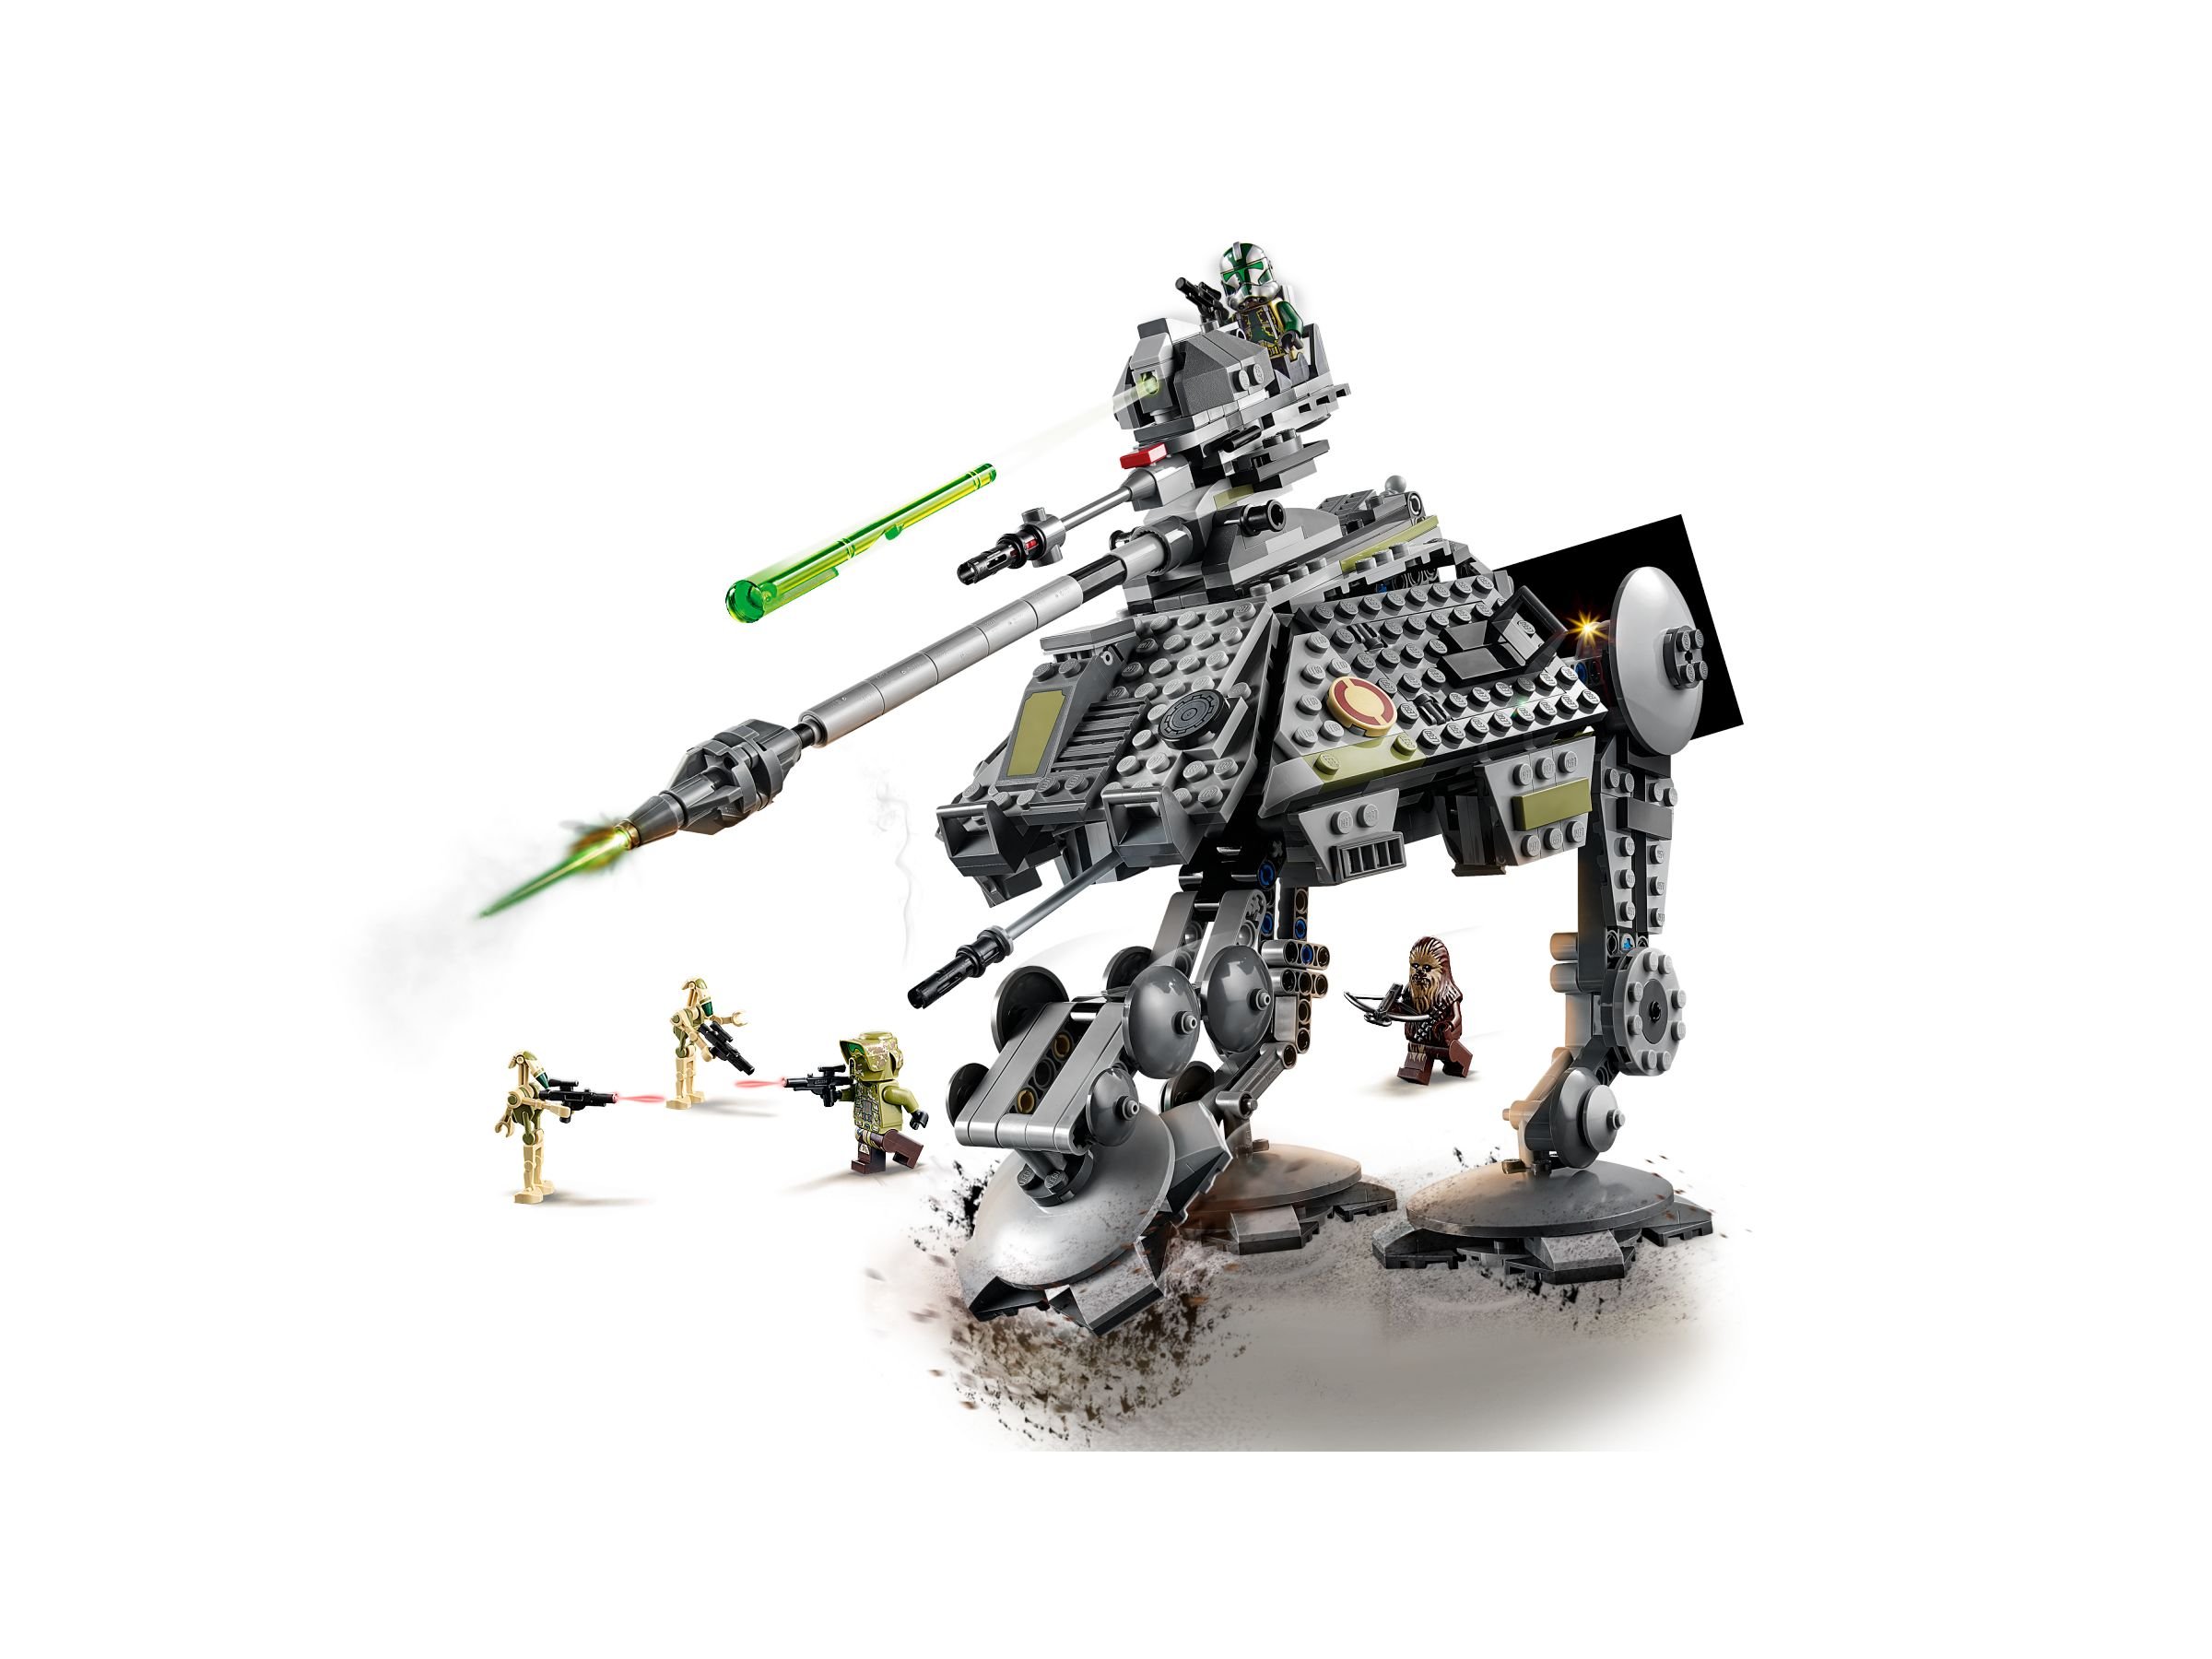 LEGO Star Wars 75234 AT-AP Walker LEGO_75234_alt2.jpg